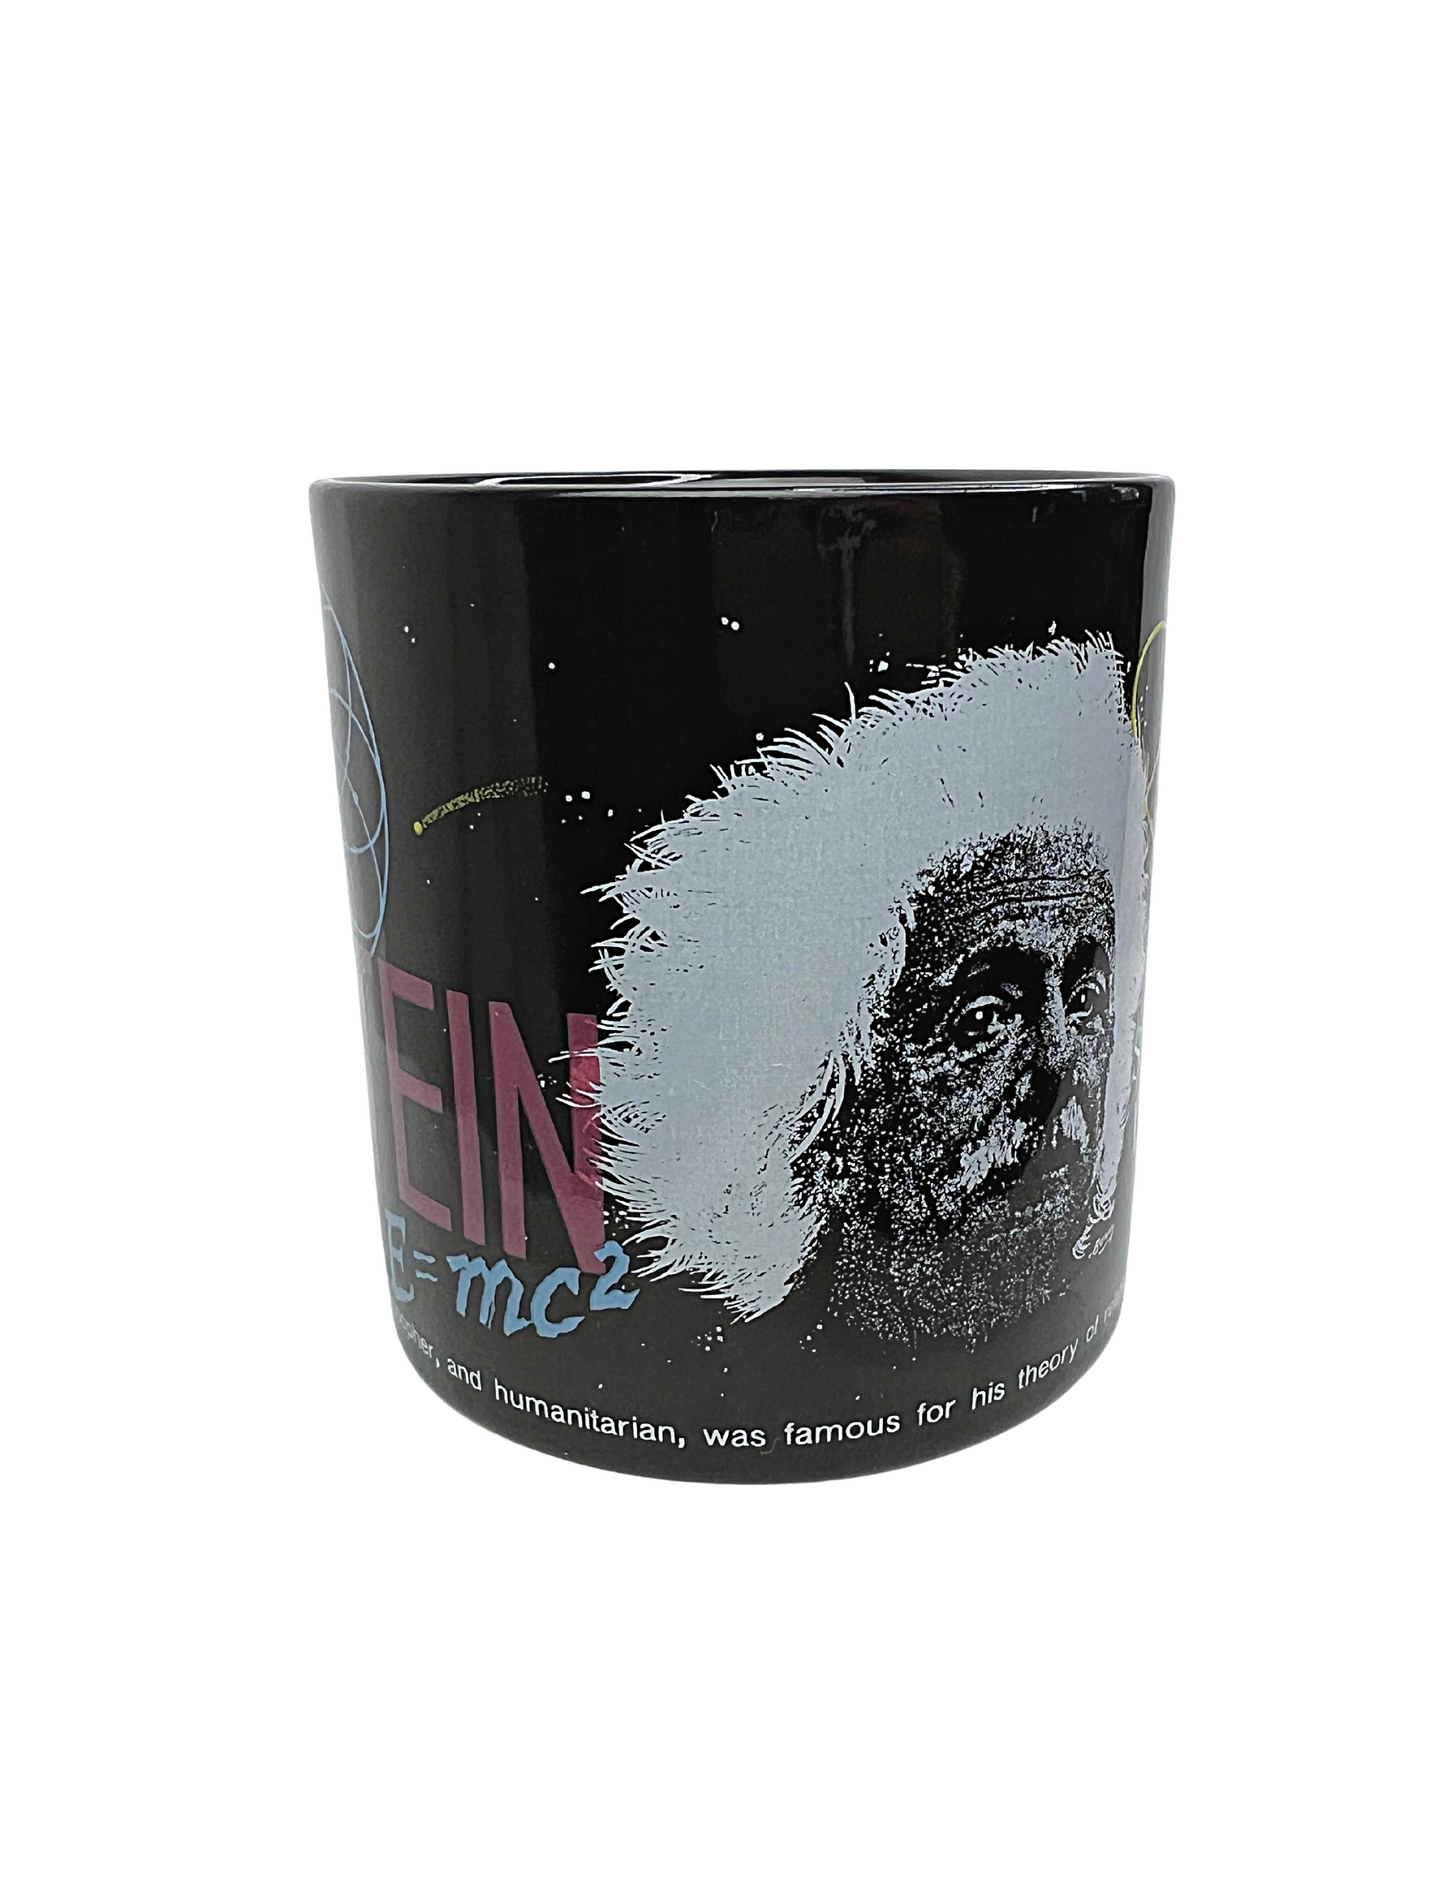 1987 Albert Einstein Smithsonian Institution Washington DC Coffee Mug